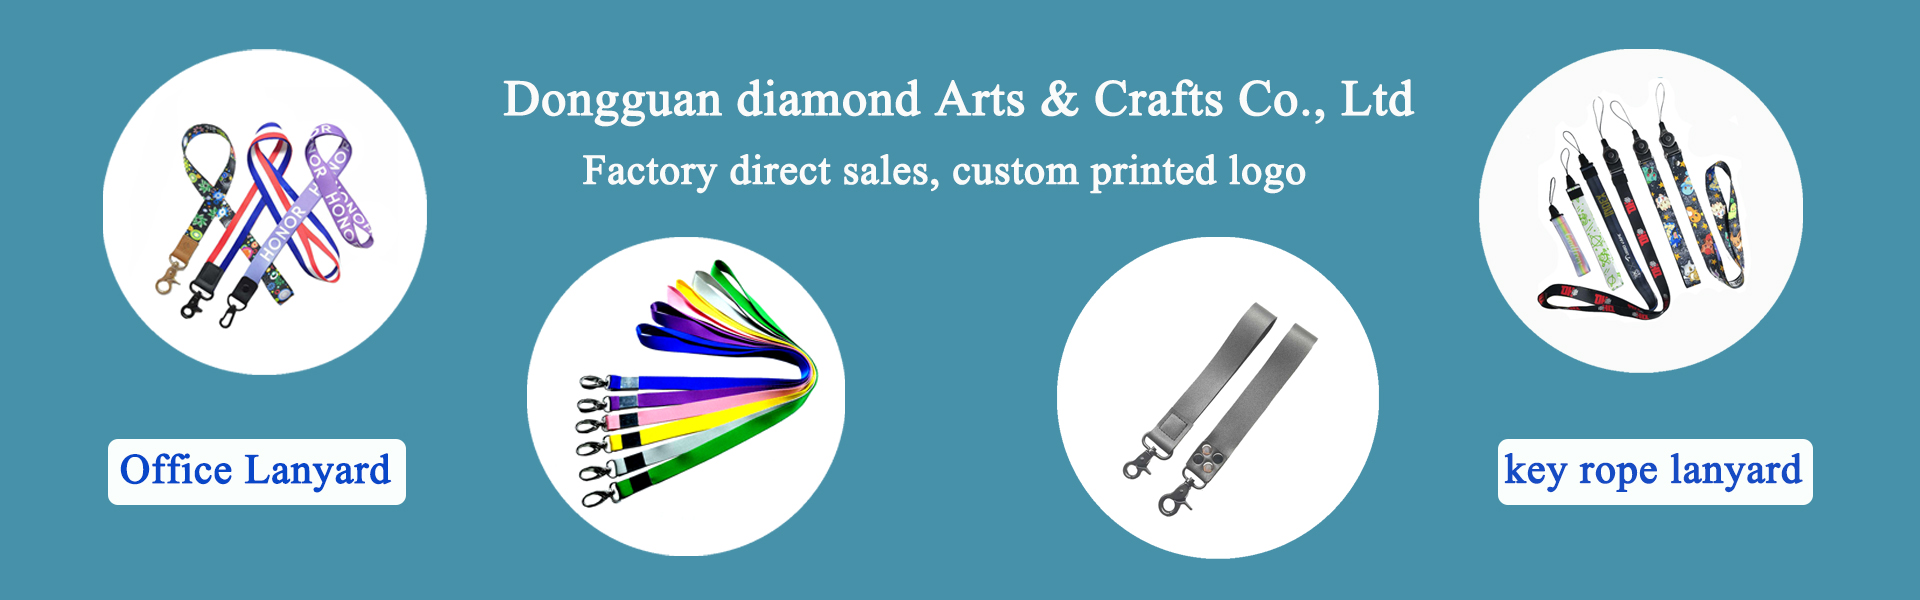 lanyard, ruházati kellékek, kedvtelésből tartott állatok készletei,Dongguan diamond Arts & Crafts Co., Ltd